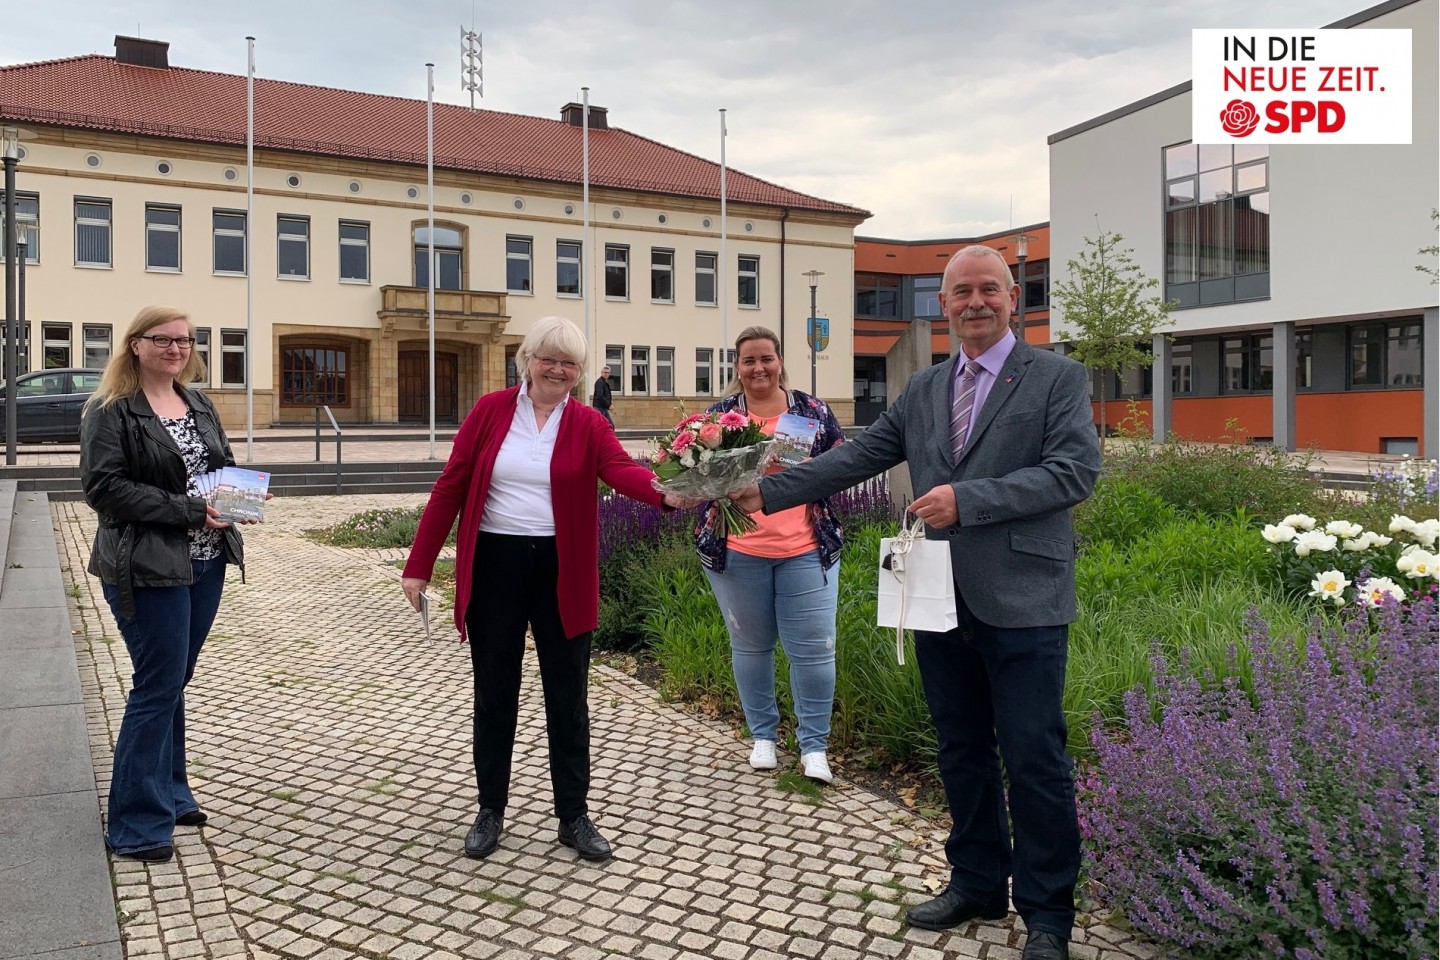 SPD-Ortsverein Bad Driburg erhielt großartiges Geschenk. Detlef Gehle nimmt Chronik des SPD-Ortsvereins Bad Driburg entgegen.